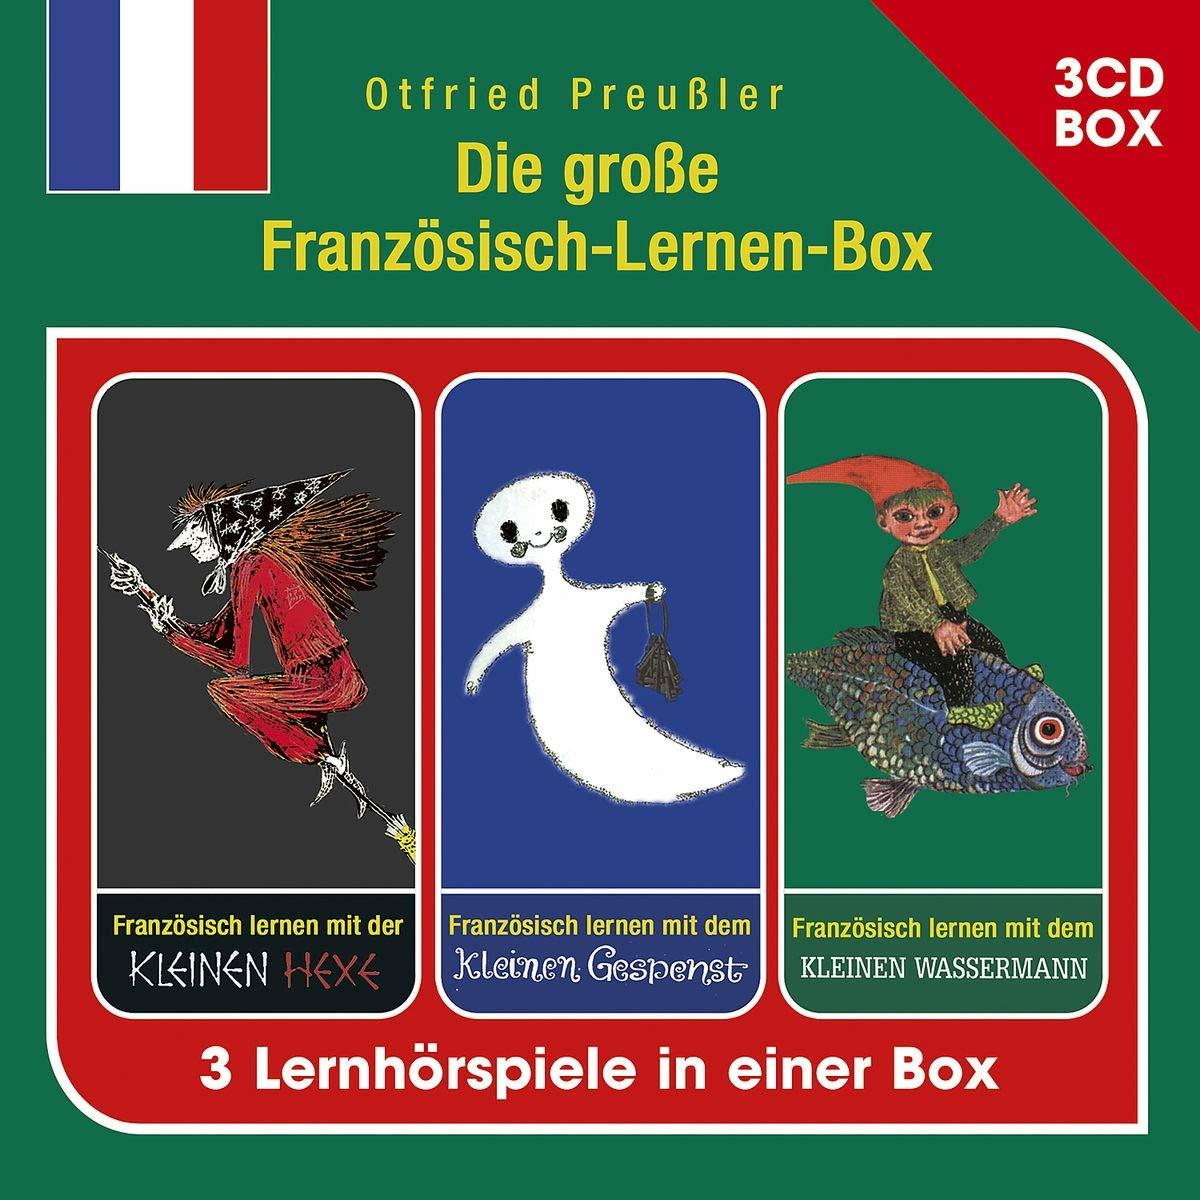 Otfried Preussler - - Große Französisch-Lernen-Box Die (CD) (3-CD Hspbox)